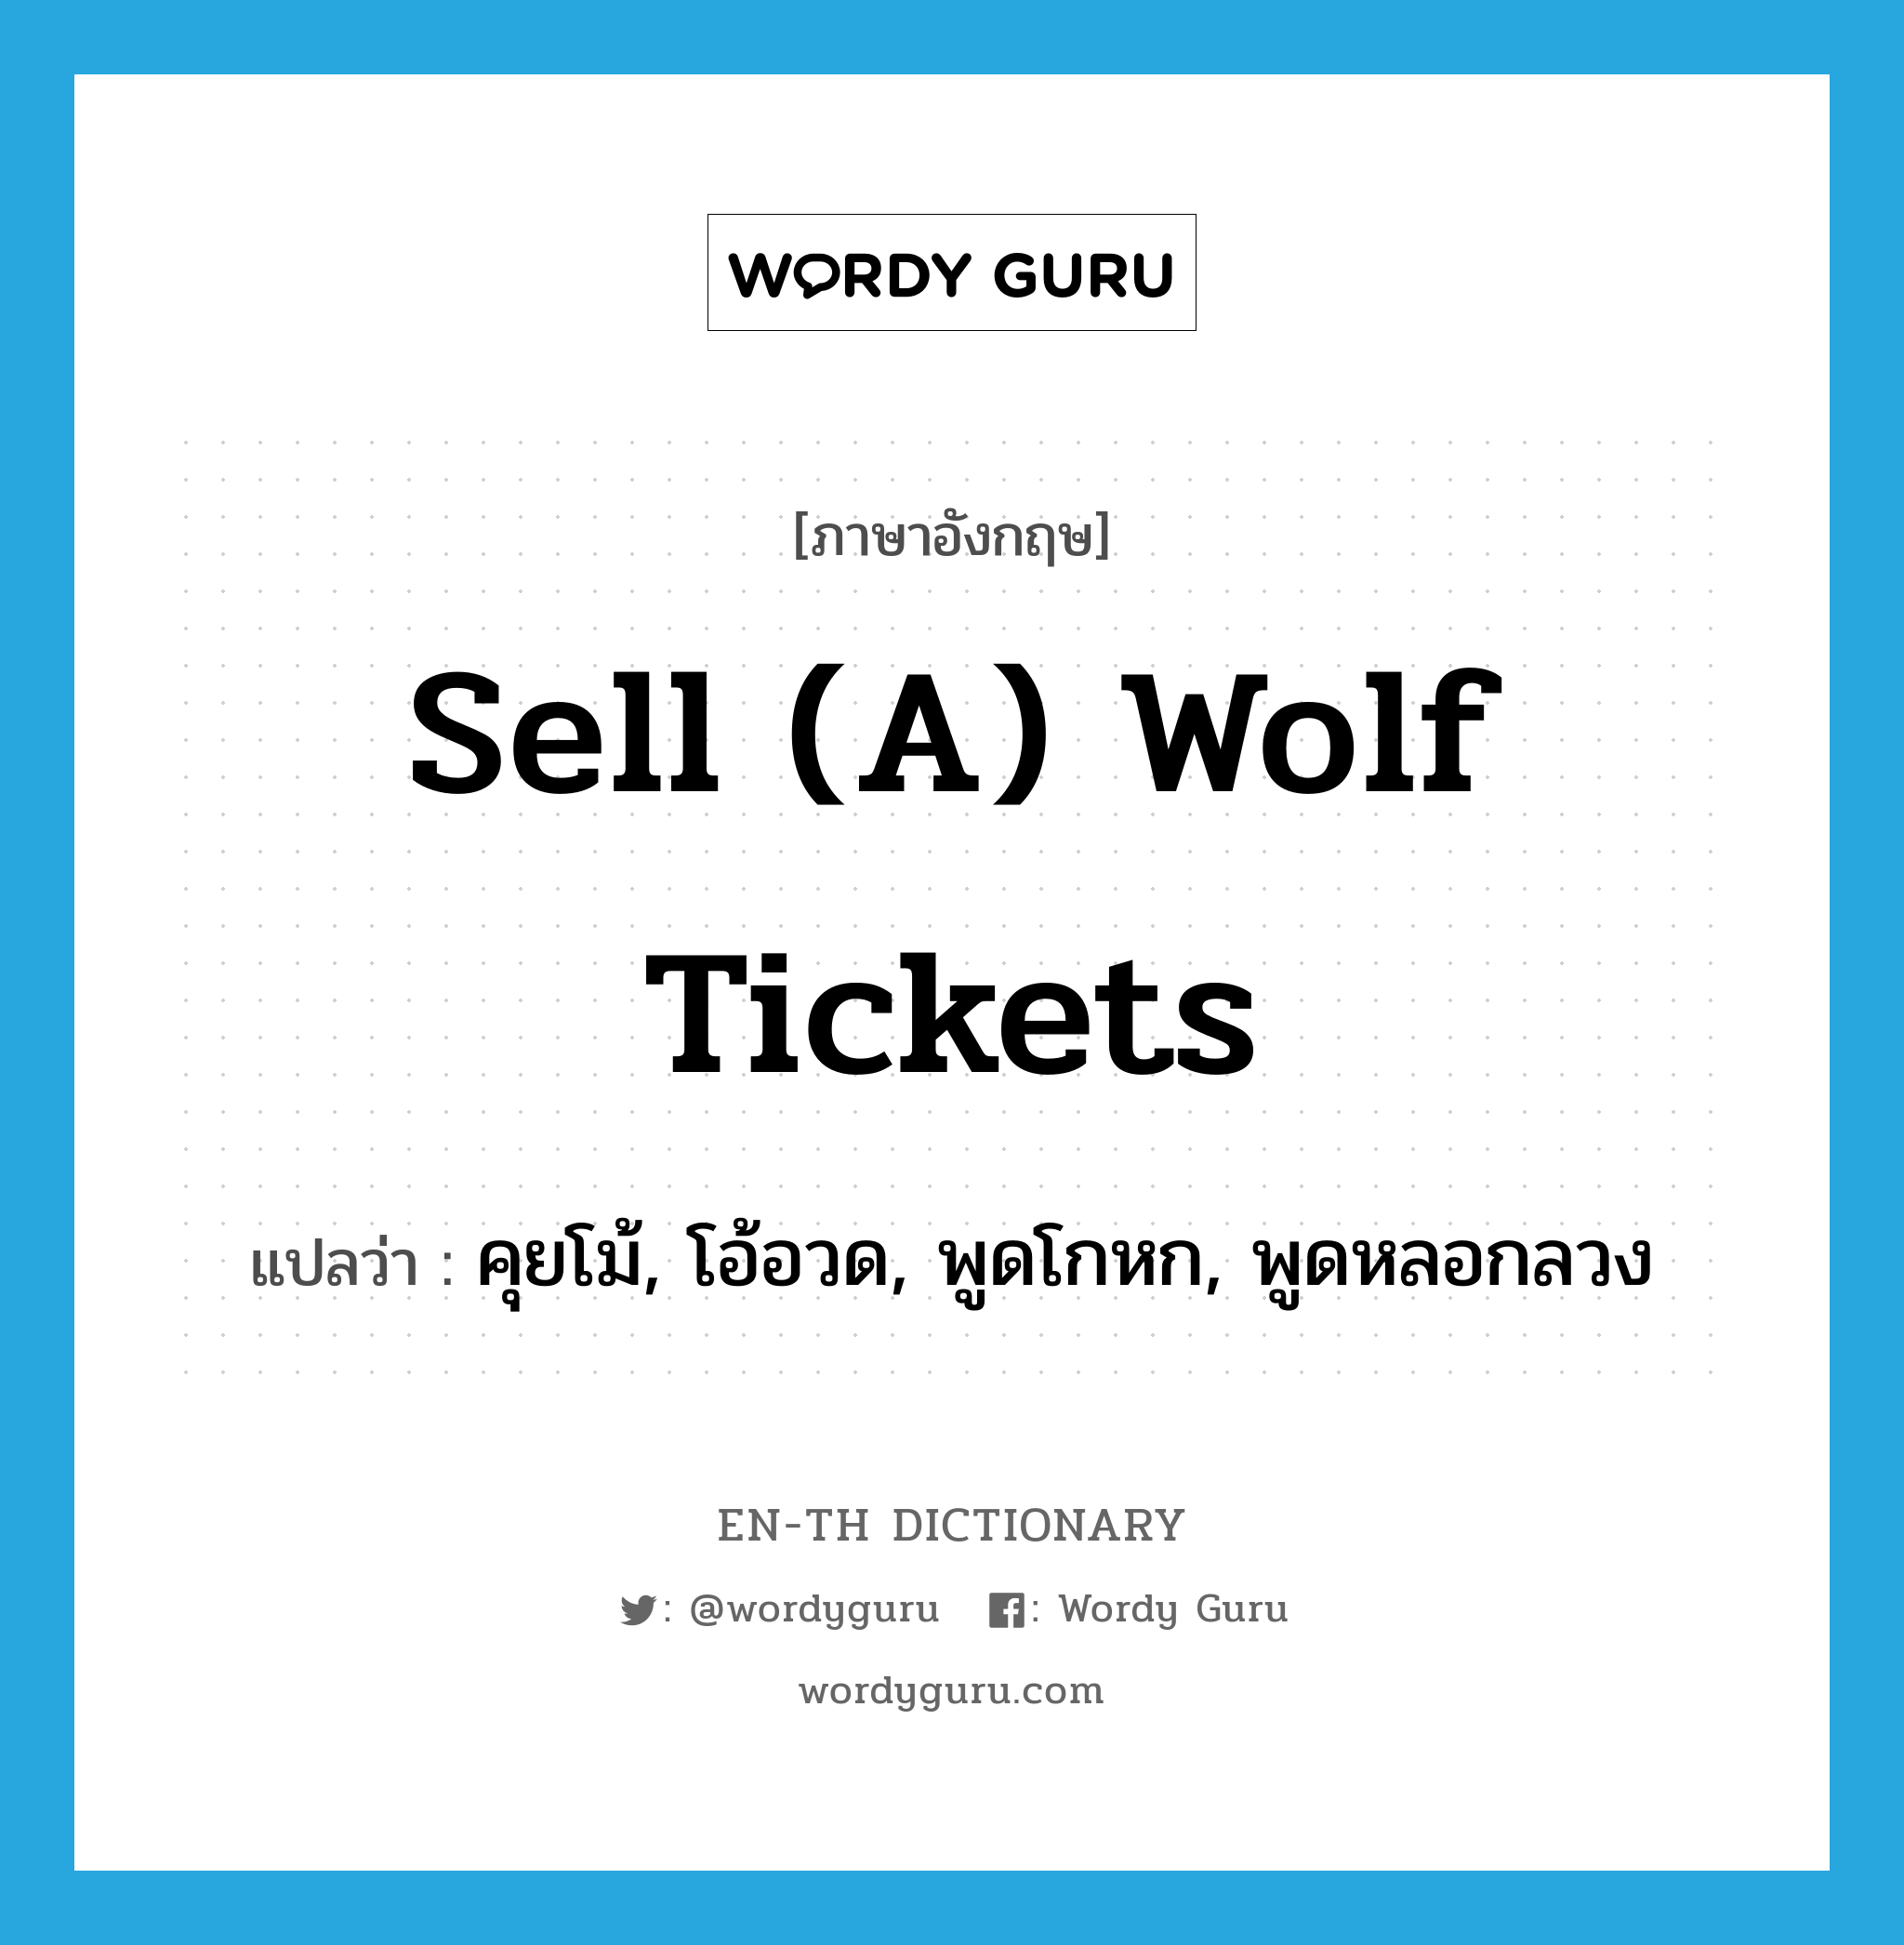 คุยโม้, โอ้อวด, พูดโกหก, พูดหลอกลวง ภาษาอังกฤษ?, คำศัพท์ภาษาอังกฤษ คุยโม้, โอ้อวด, พูดโกหก, พูดหลอกลวง แปลว่า sell (a) wolf tickets ประเภท SL หมวด SL